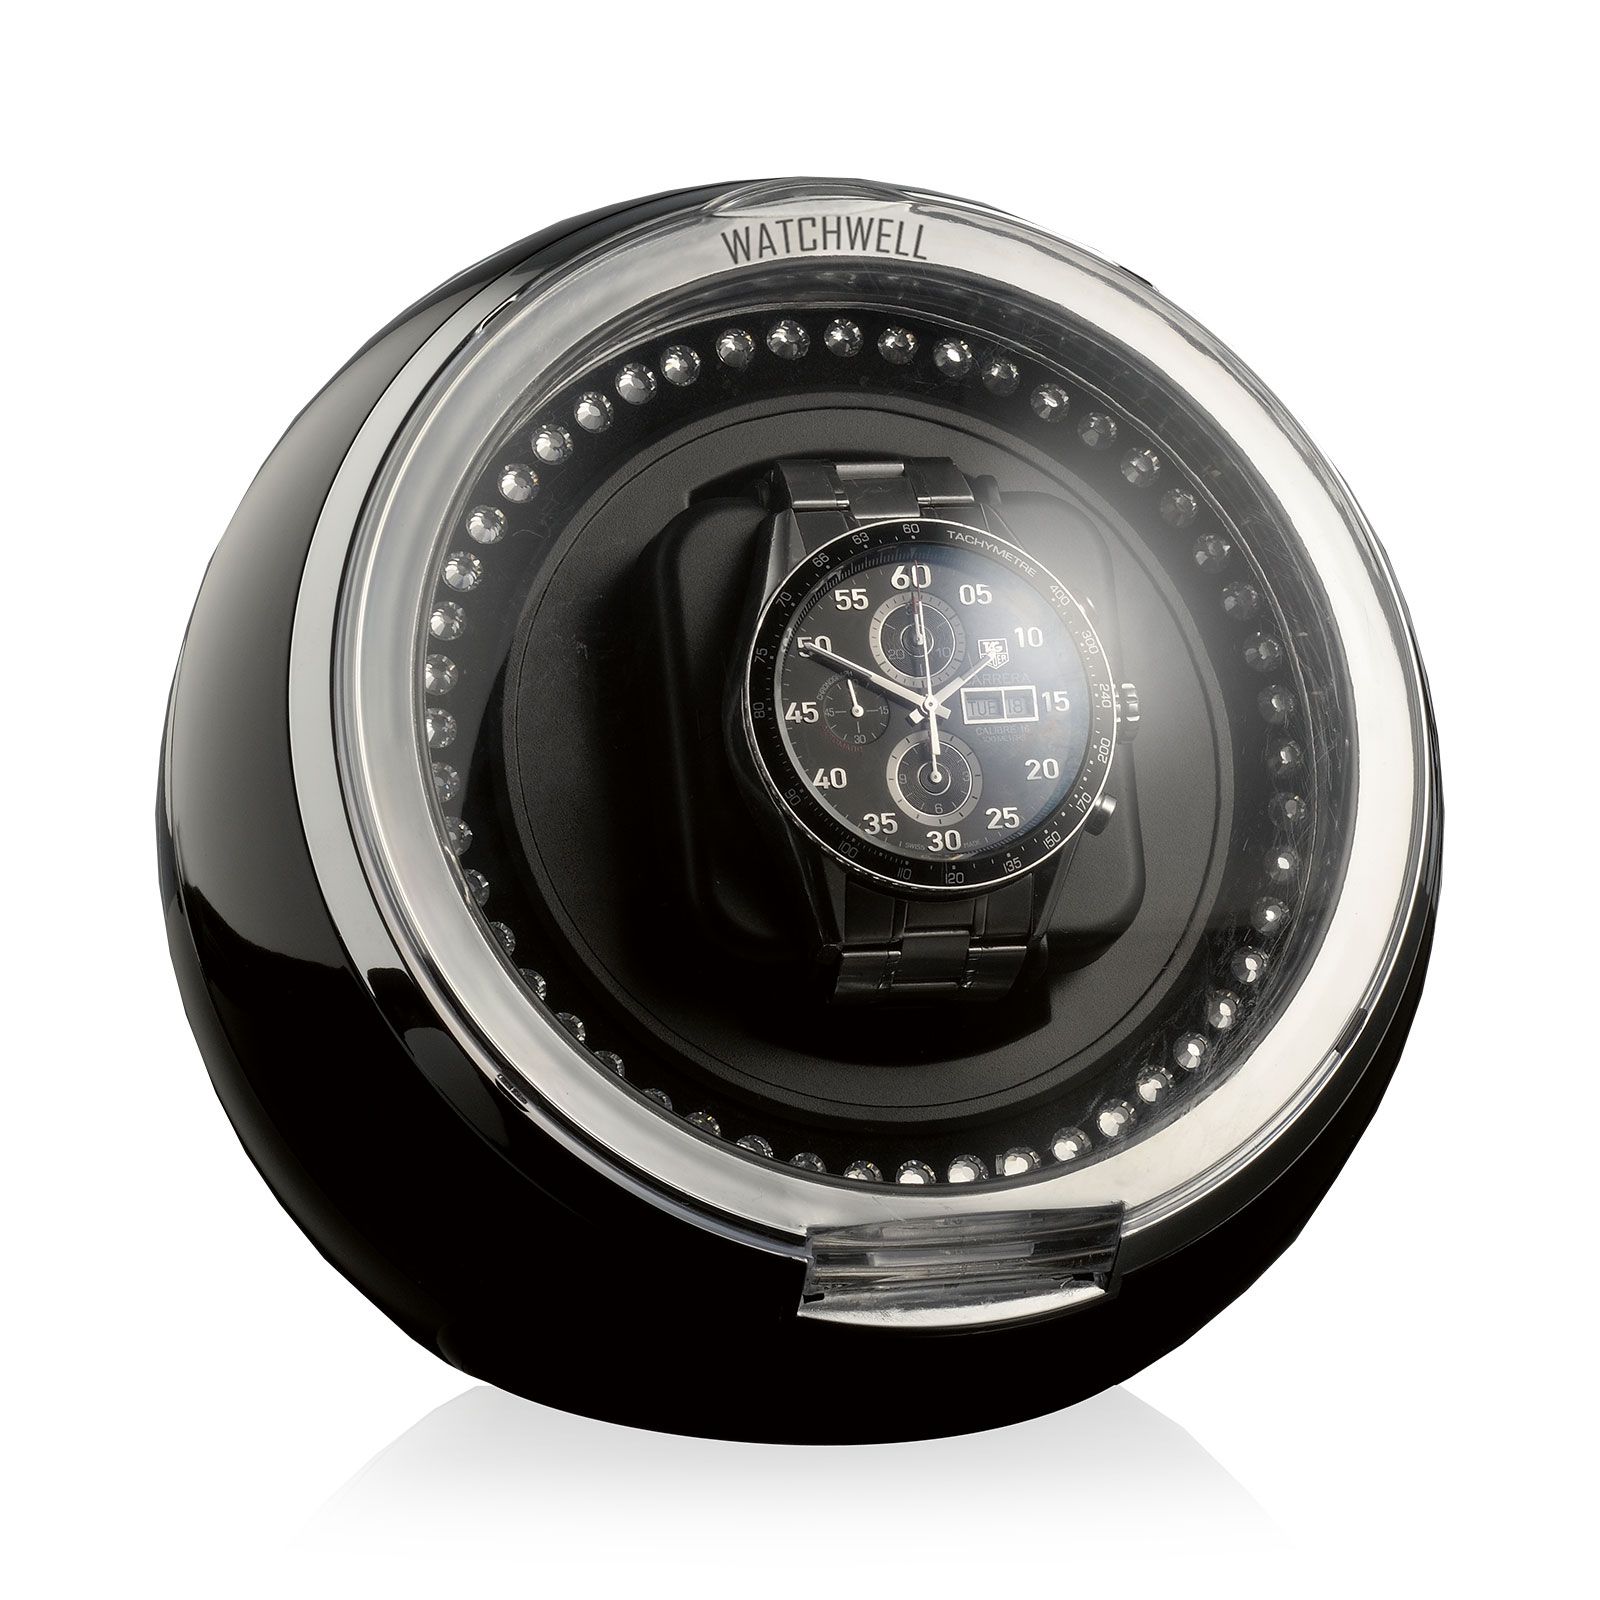 Watchwell Uhrenbeweger Globe Shine - Schwarz / Blaue Beleuchtung